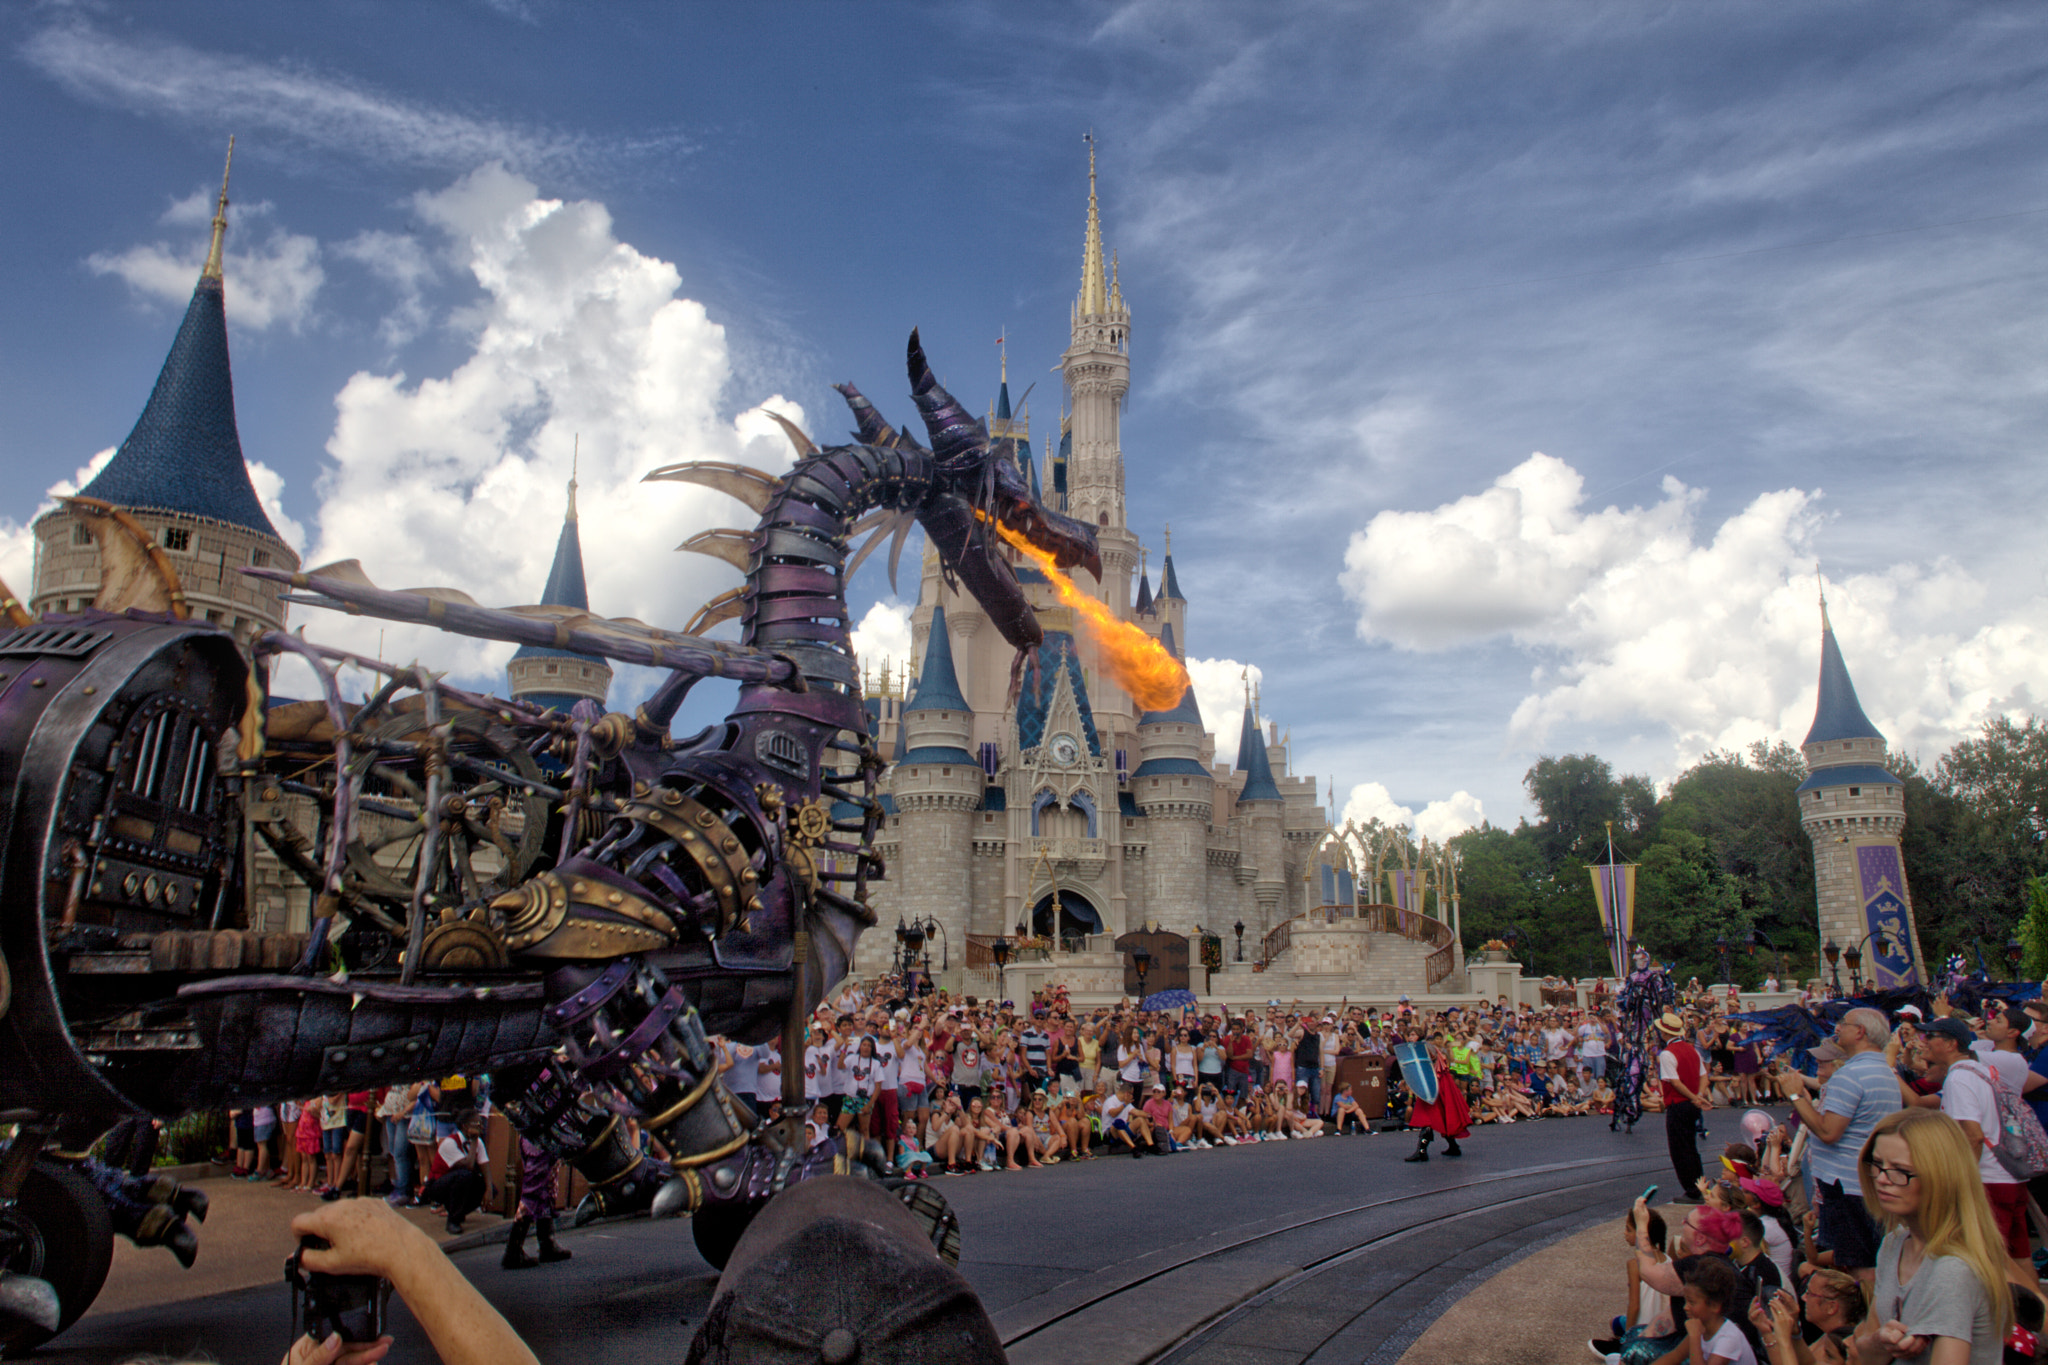 Canon EOS 5D Mark II sample photo. Festival of fantasy parade at disney's magic kingdom photography